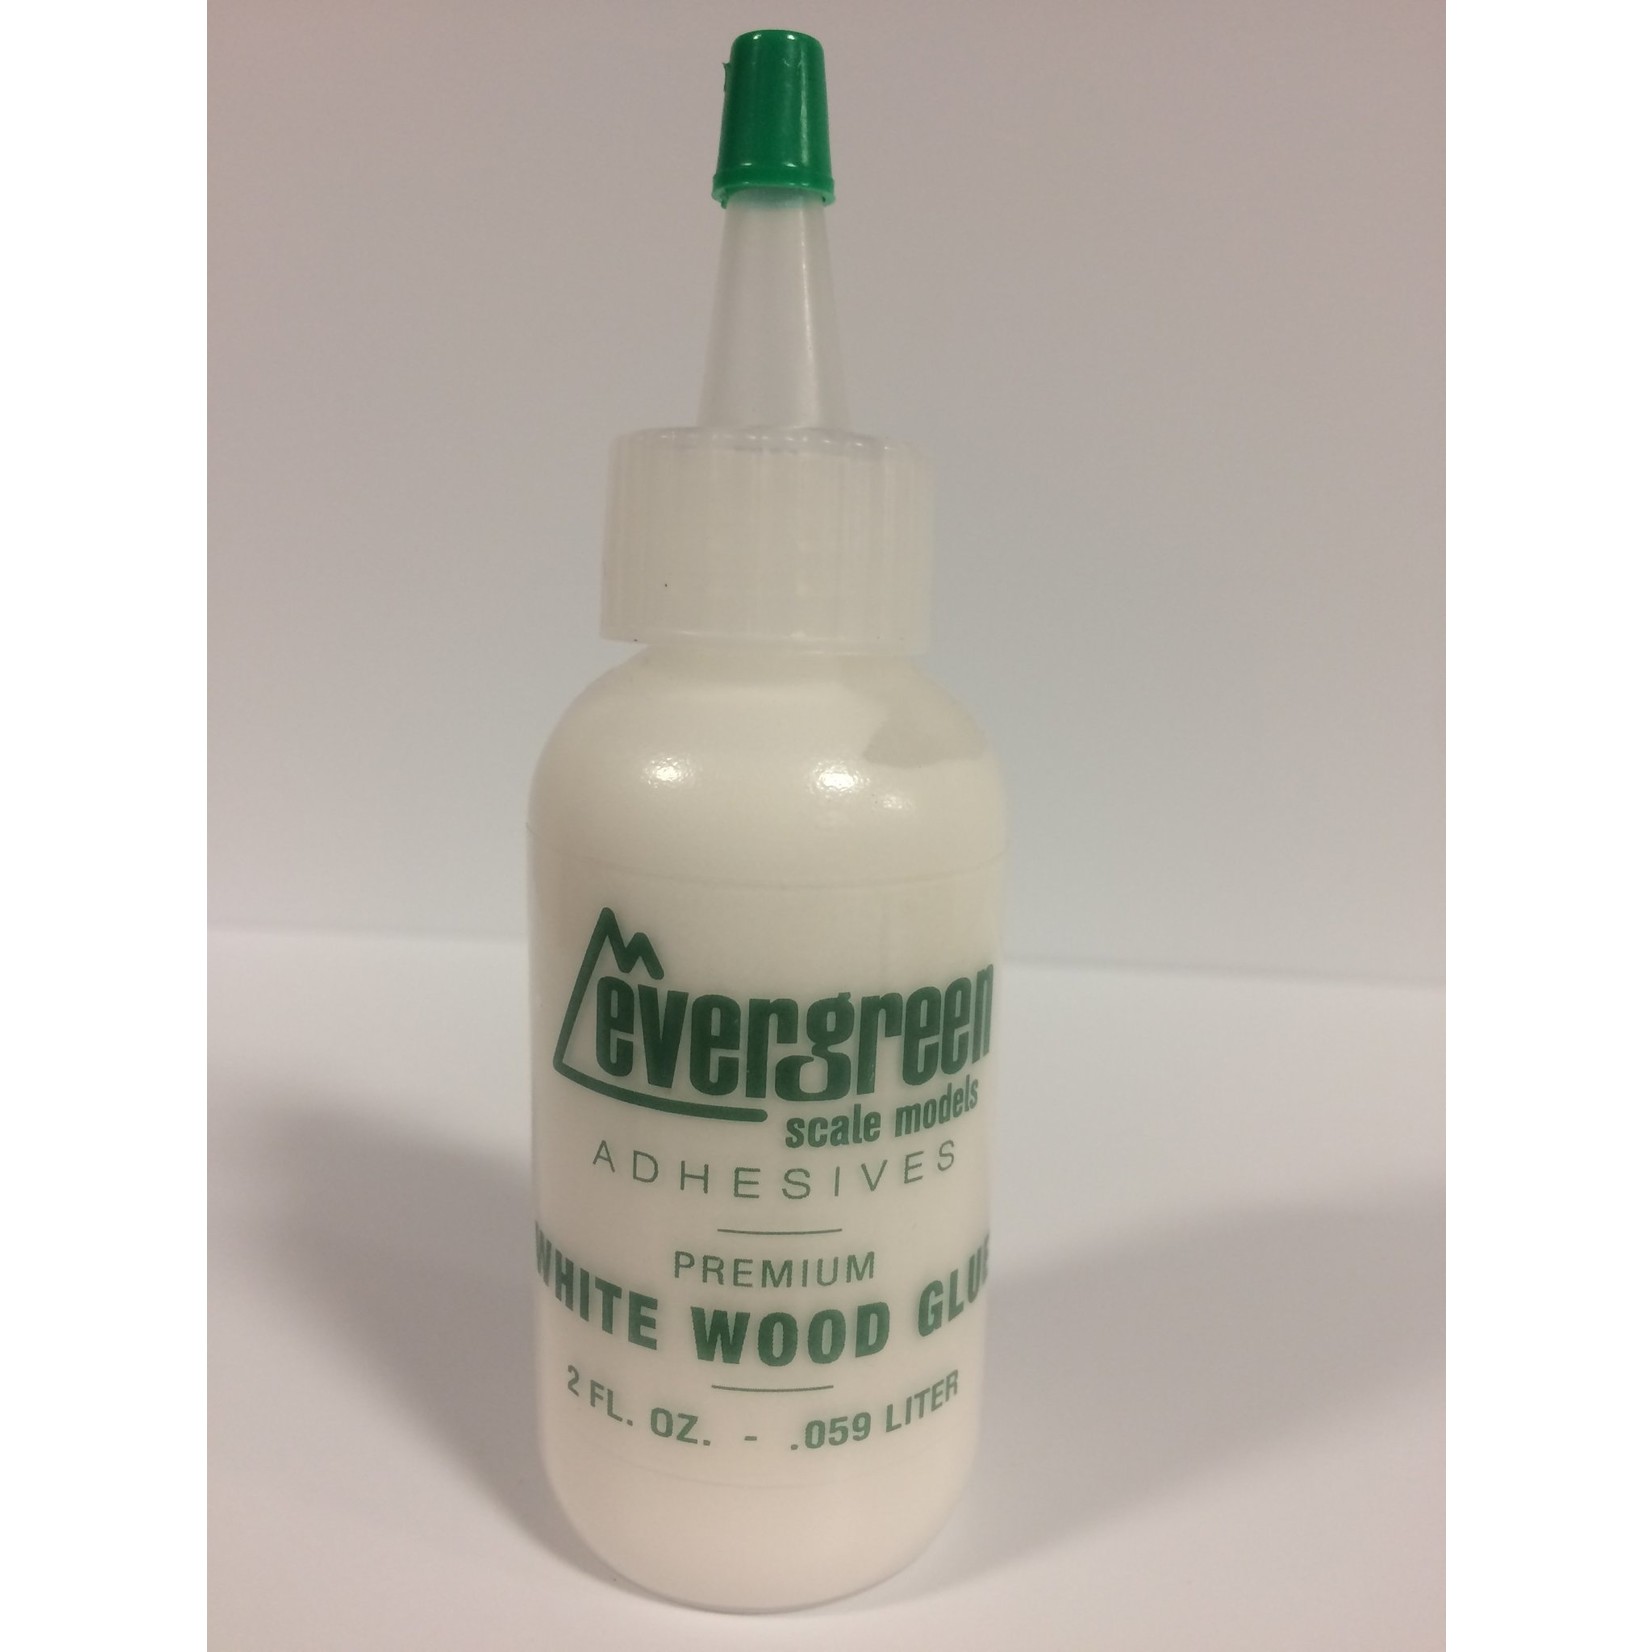 Evergreen Scale Models Evergreen White Wood Glue (2oz)